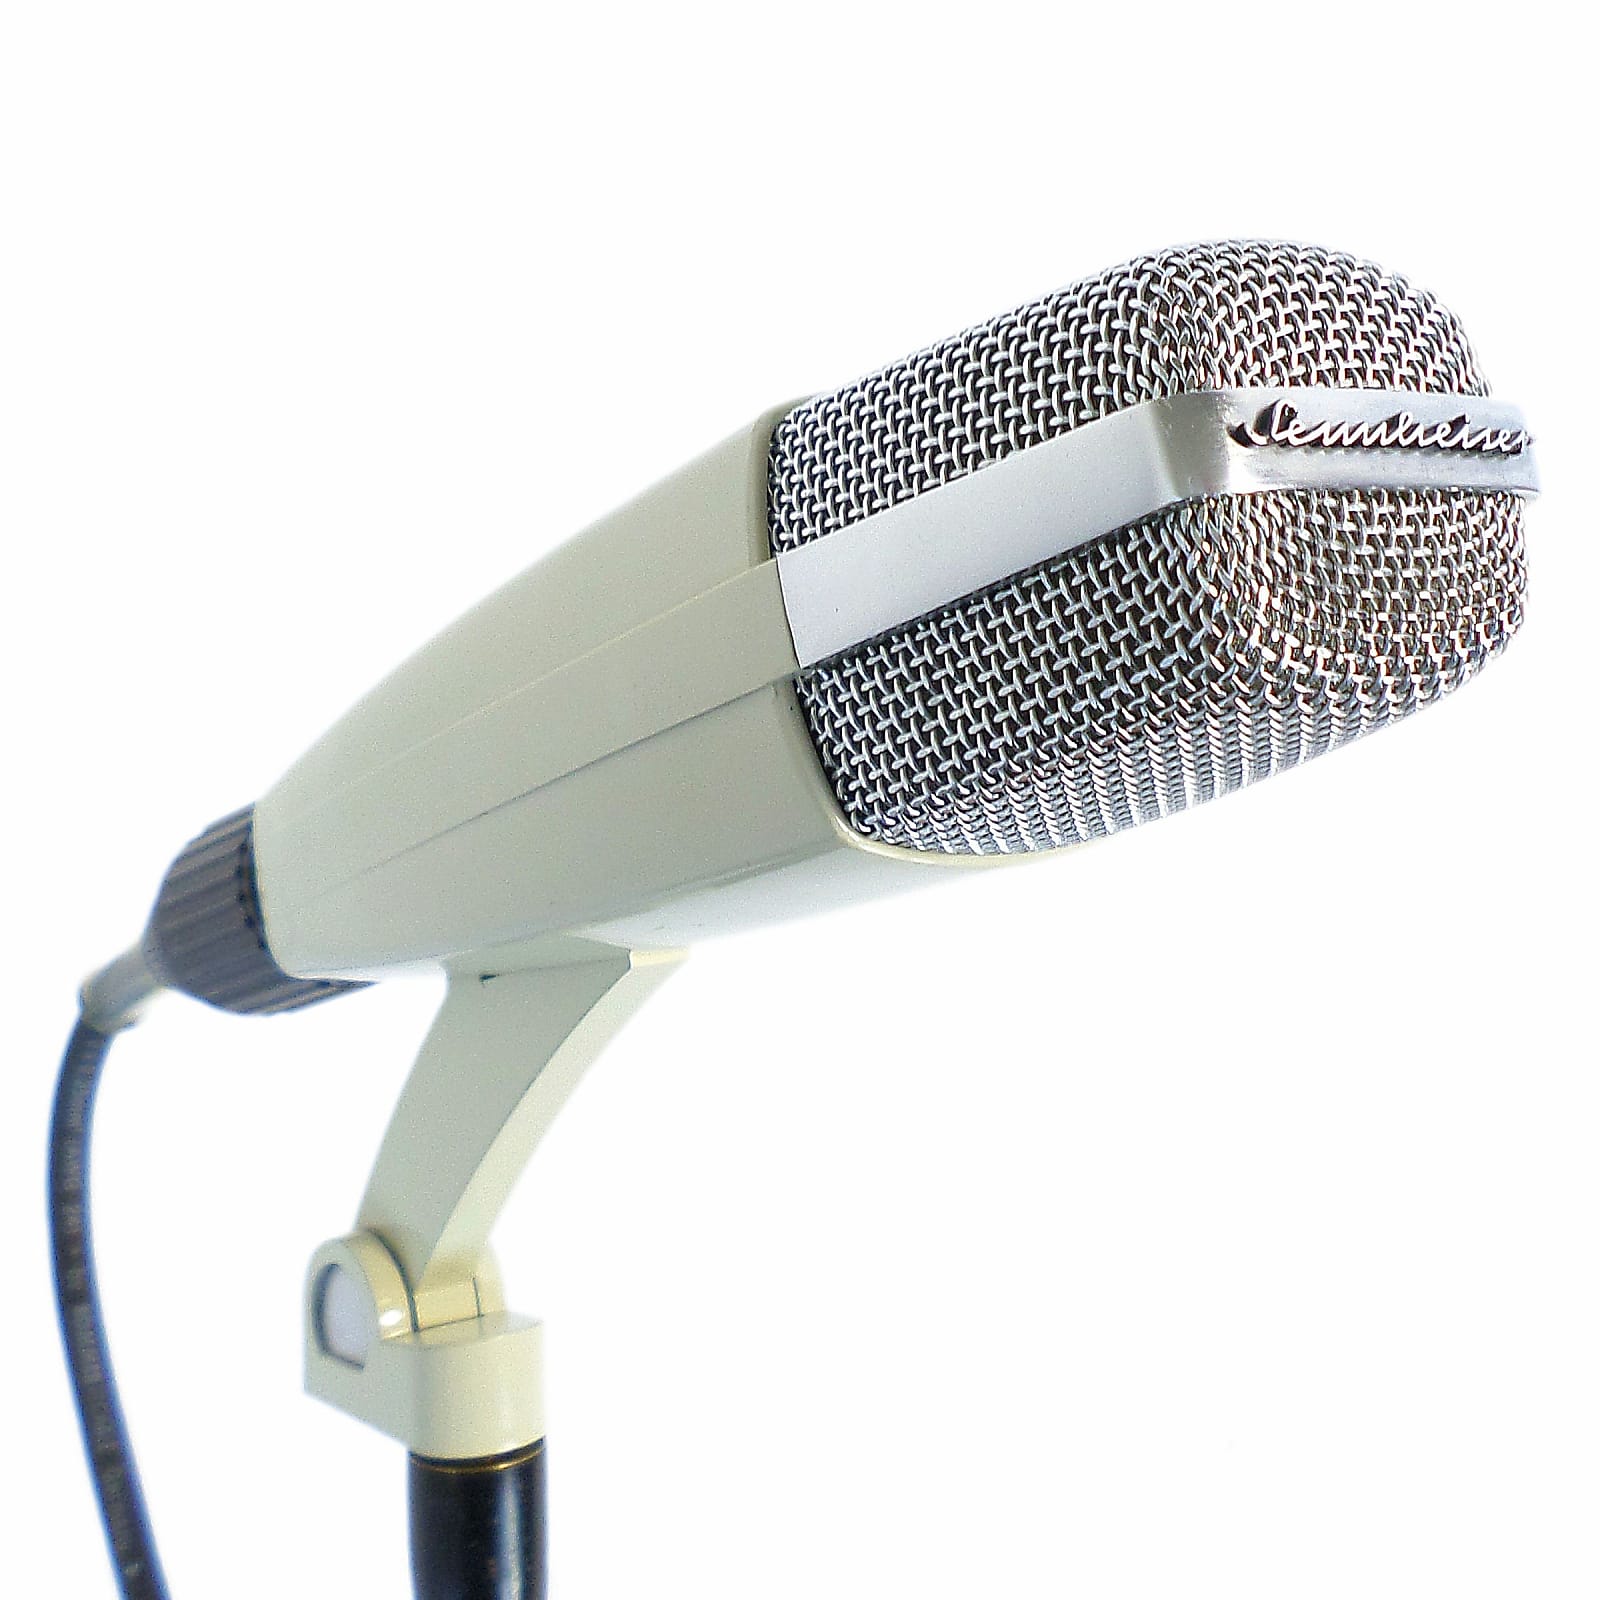 Sennheiser MD 421-2 Cardioid Dynamic Microphone | Reverb Canada